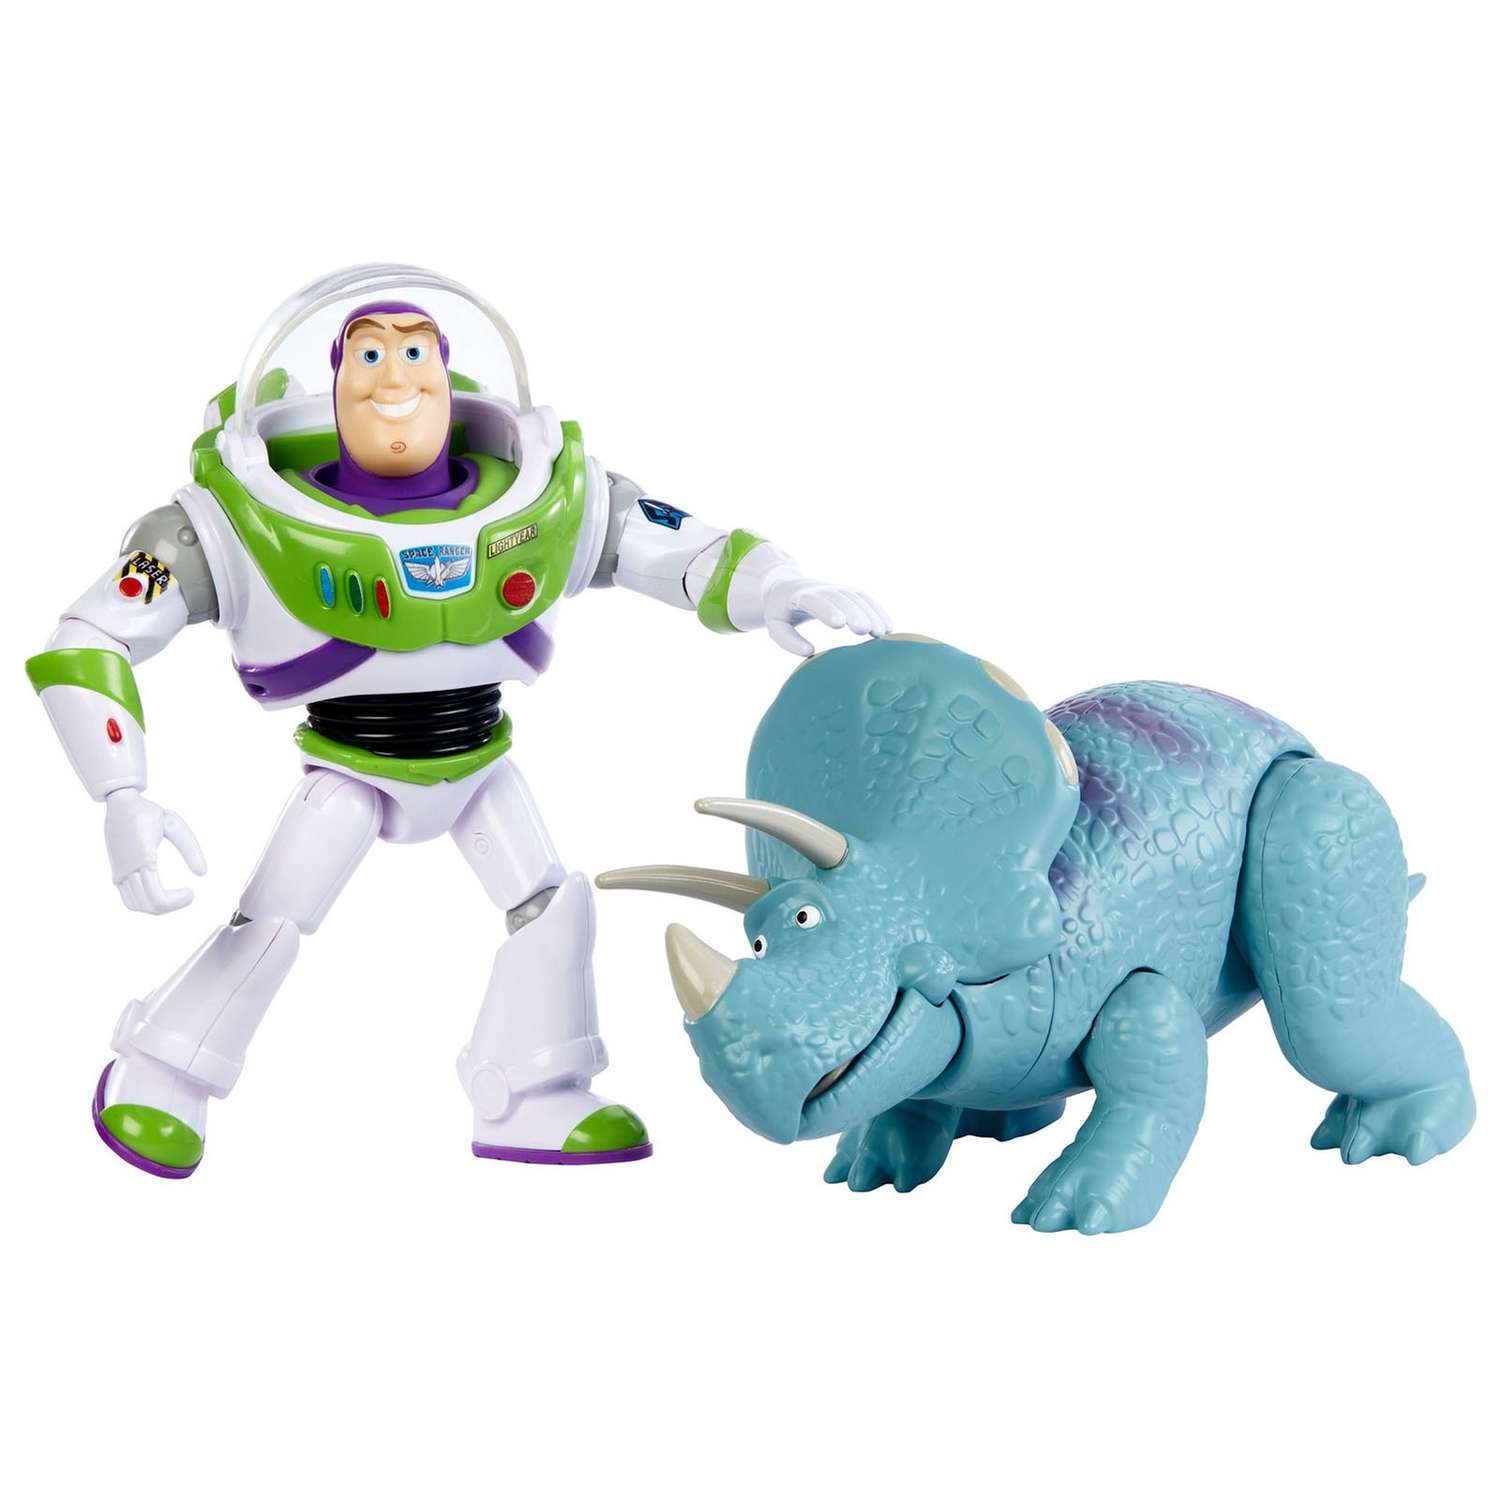 Набор фигурок Toy Story Базз Лайтер и Трикси GJH80 - фото 6